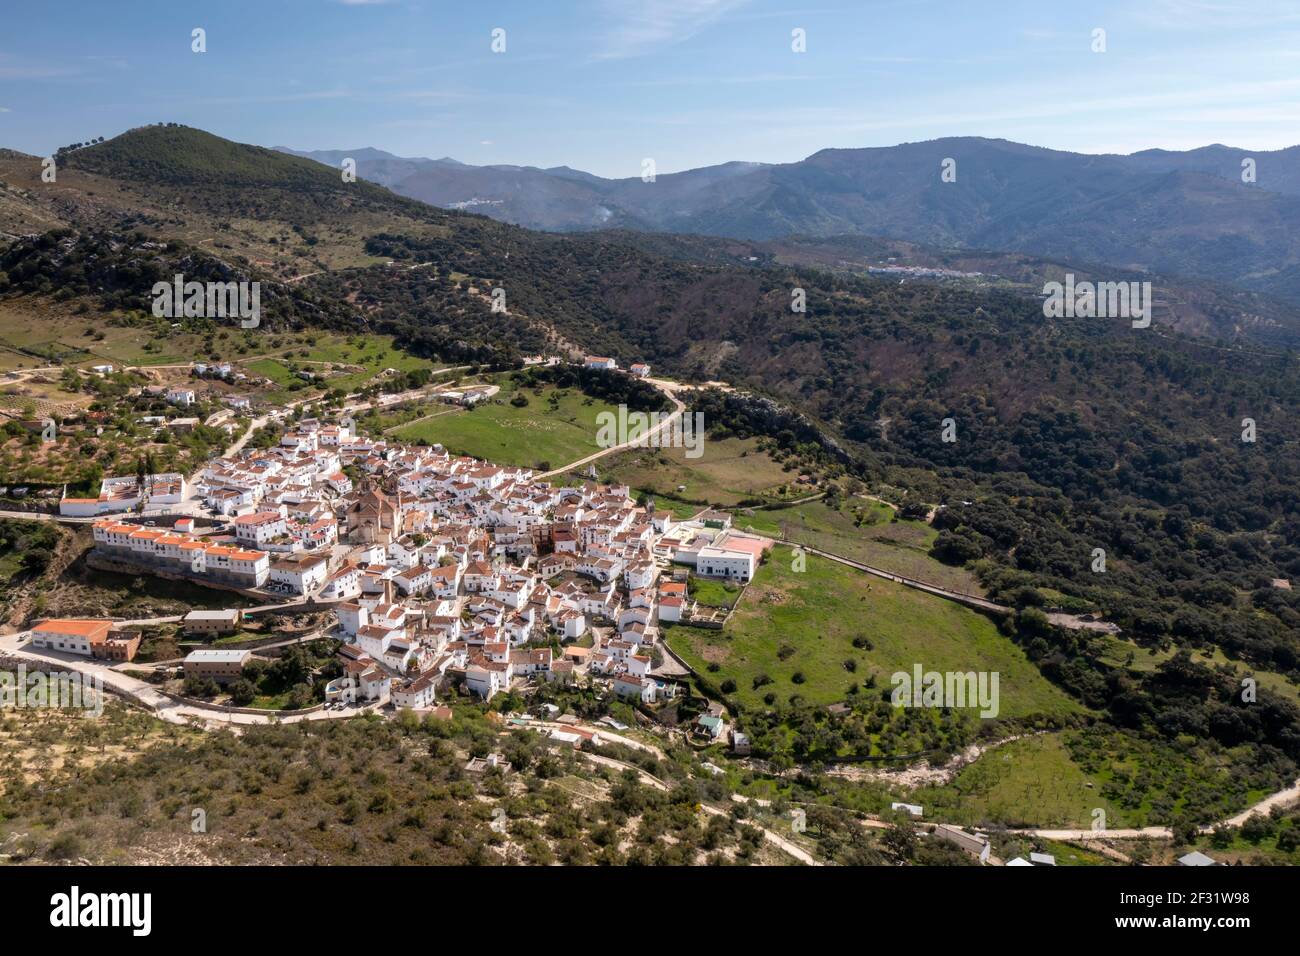 view of the municipality of Alpandeire in the Serrania de Ronda, Malaga Stock Photo